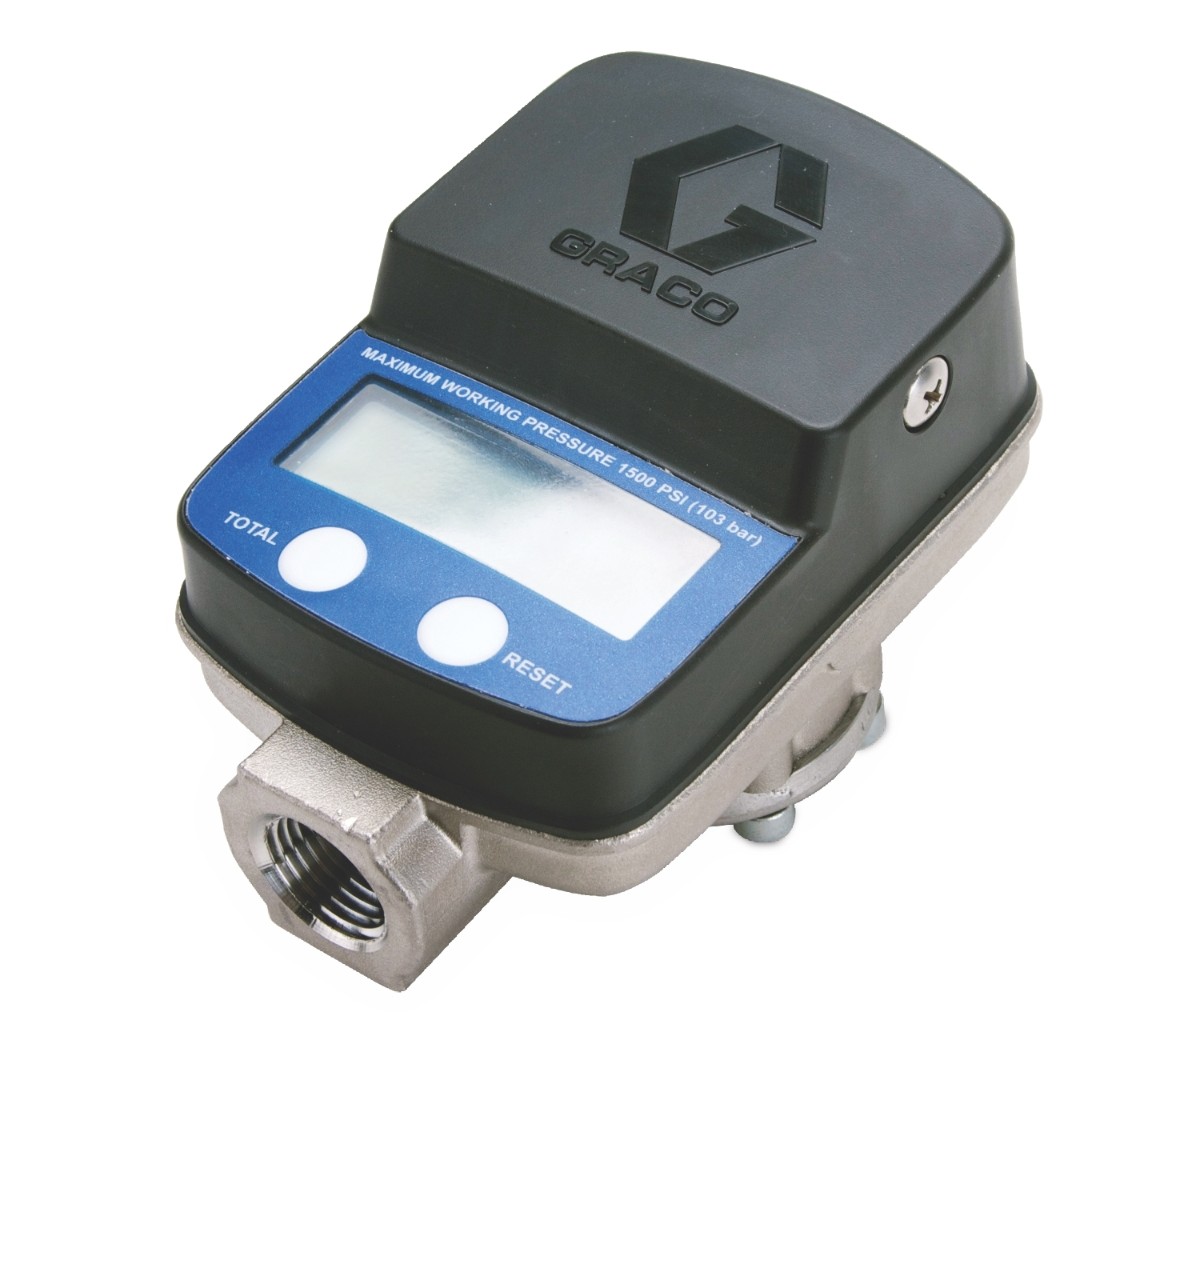 SDI15 Med/High Pressure, Med/High Flow In-Line Meter for Petroleum